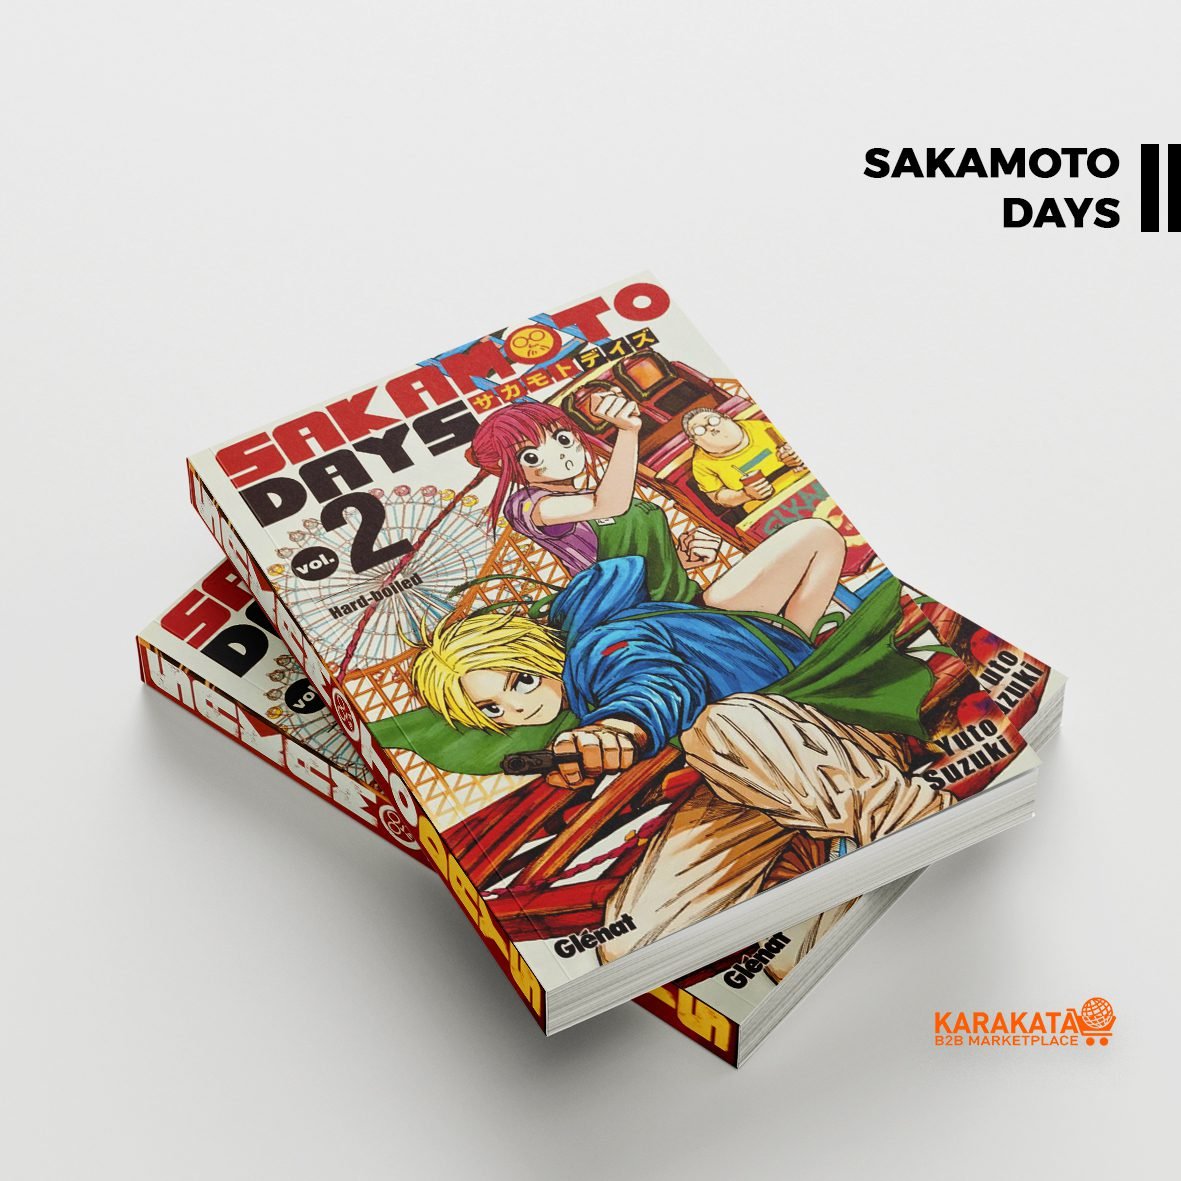 Sakamoto days